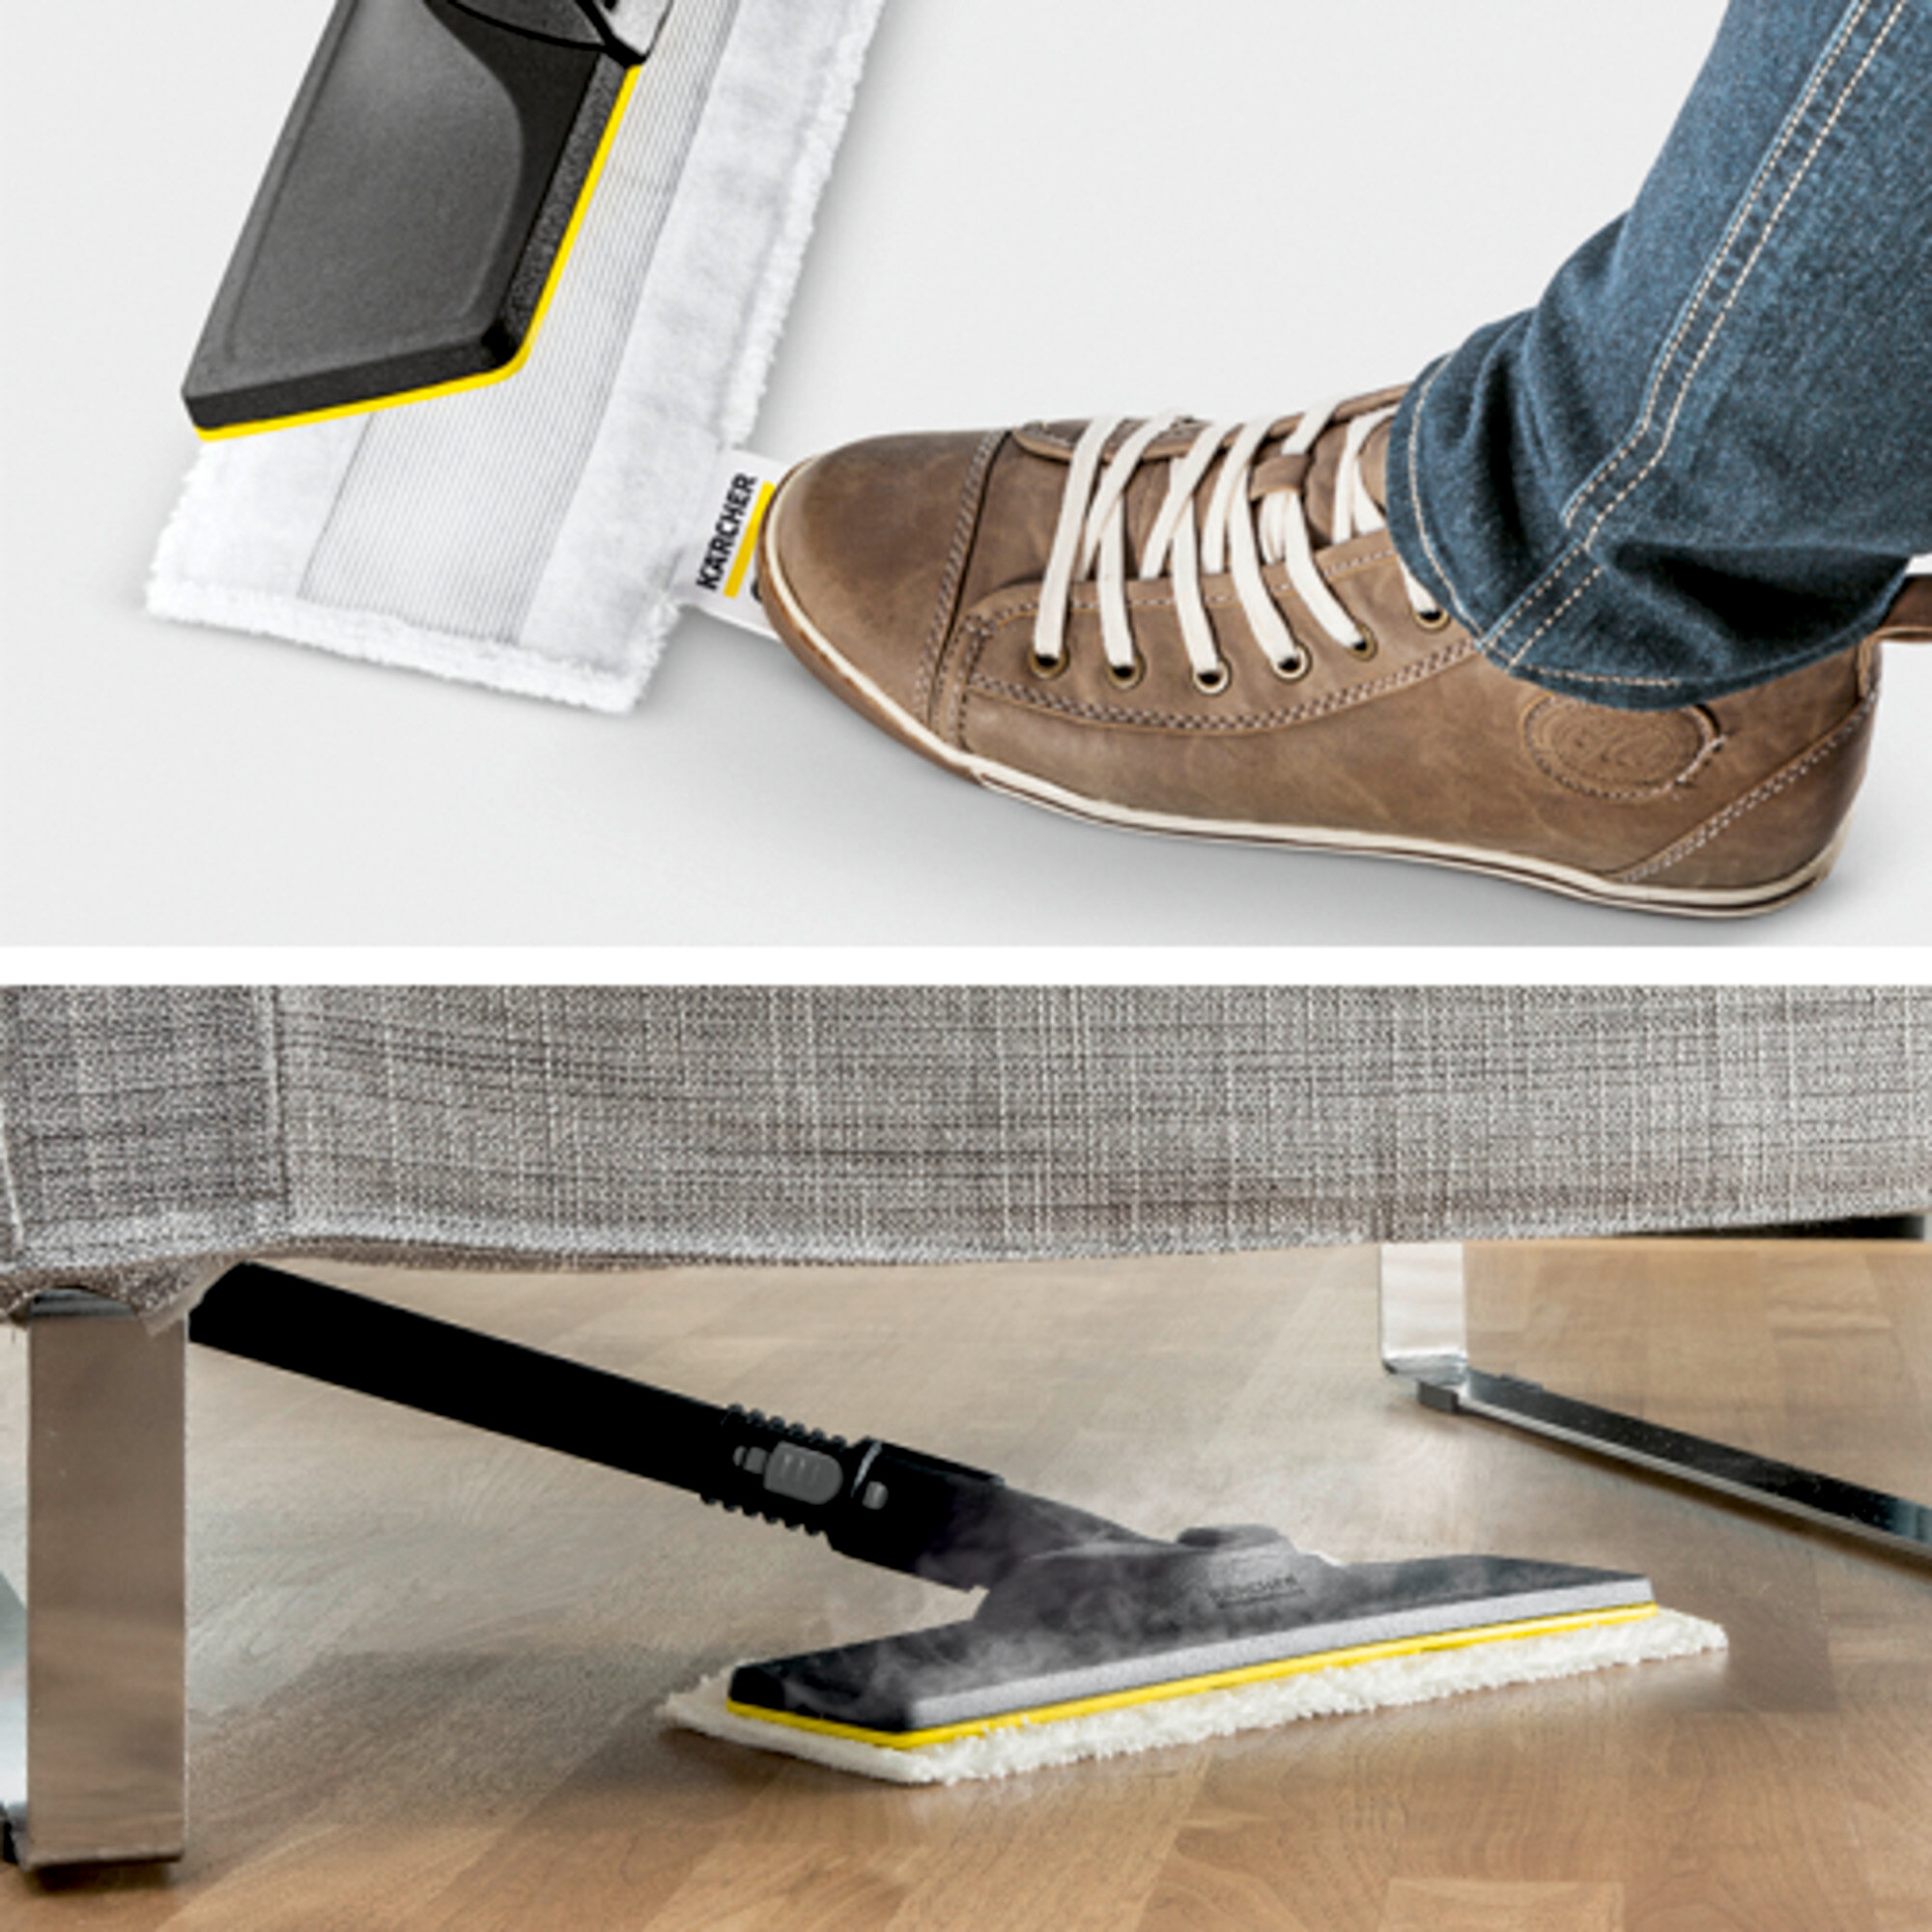 Parný čistič Parný čistič SC 4 EasyFix Premium: Súprava na čistenie podlahy EasyFix s flexibilným kĺbom na podlahovej hubici a pohodlným suchým zipsom na upevnenie utierky na podlahu